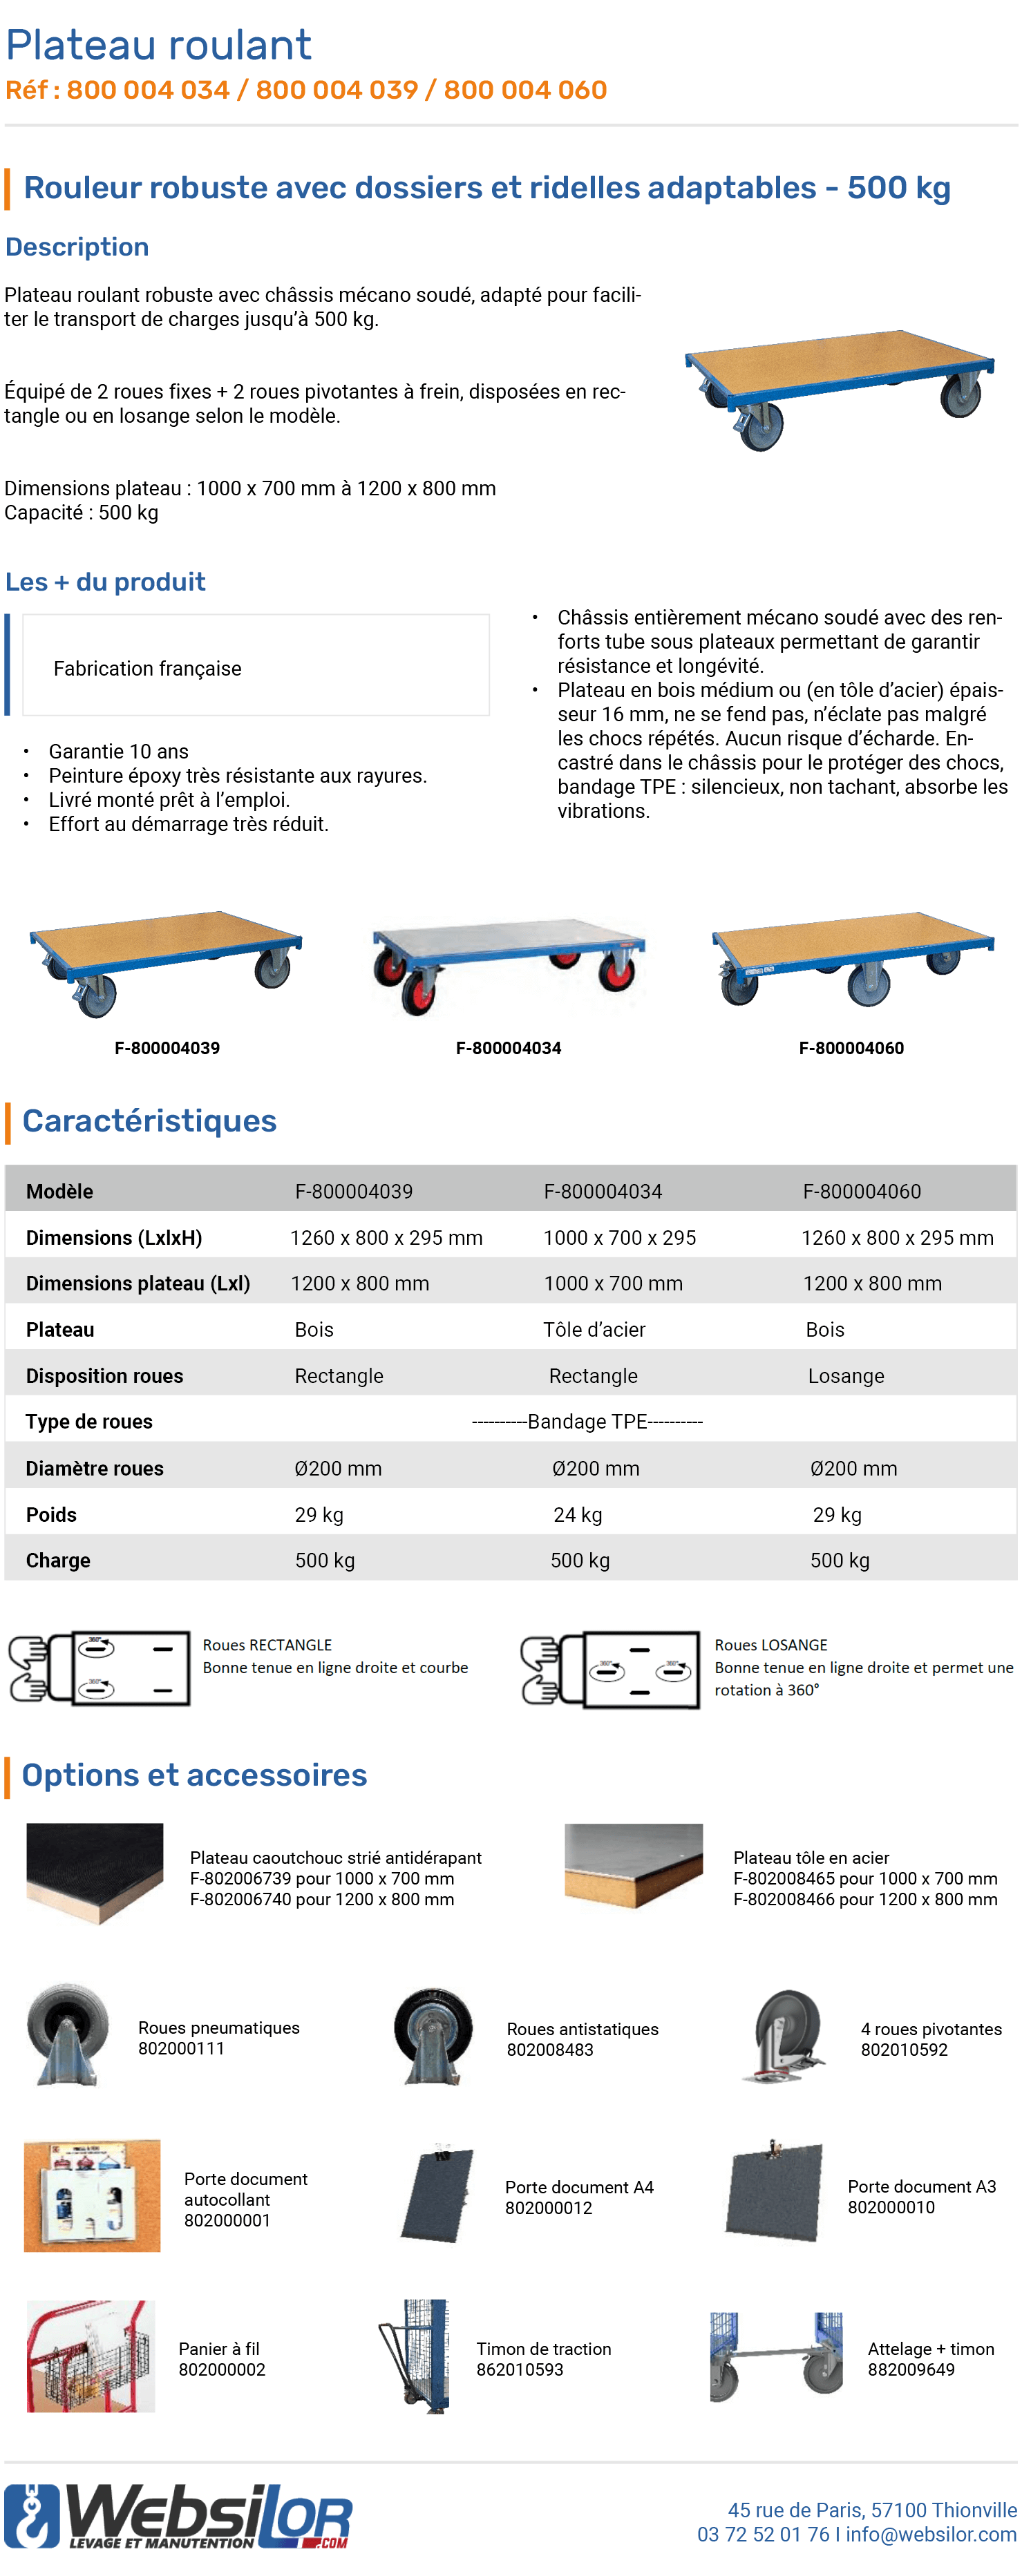 Informations technique de Plateau roulant roues losange - 500 kg